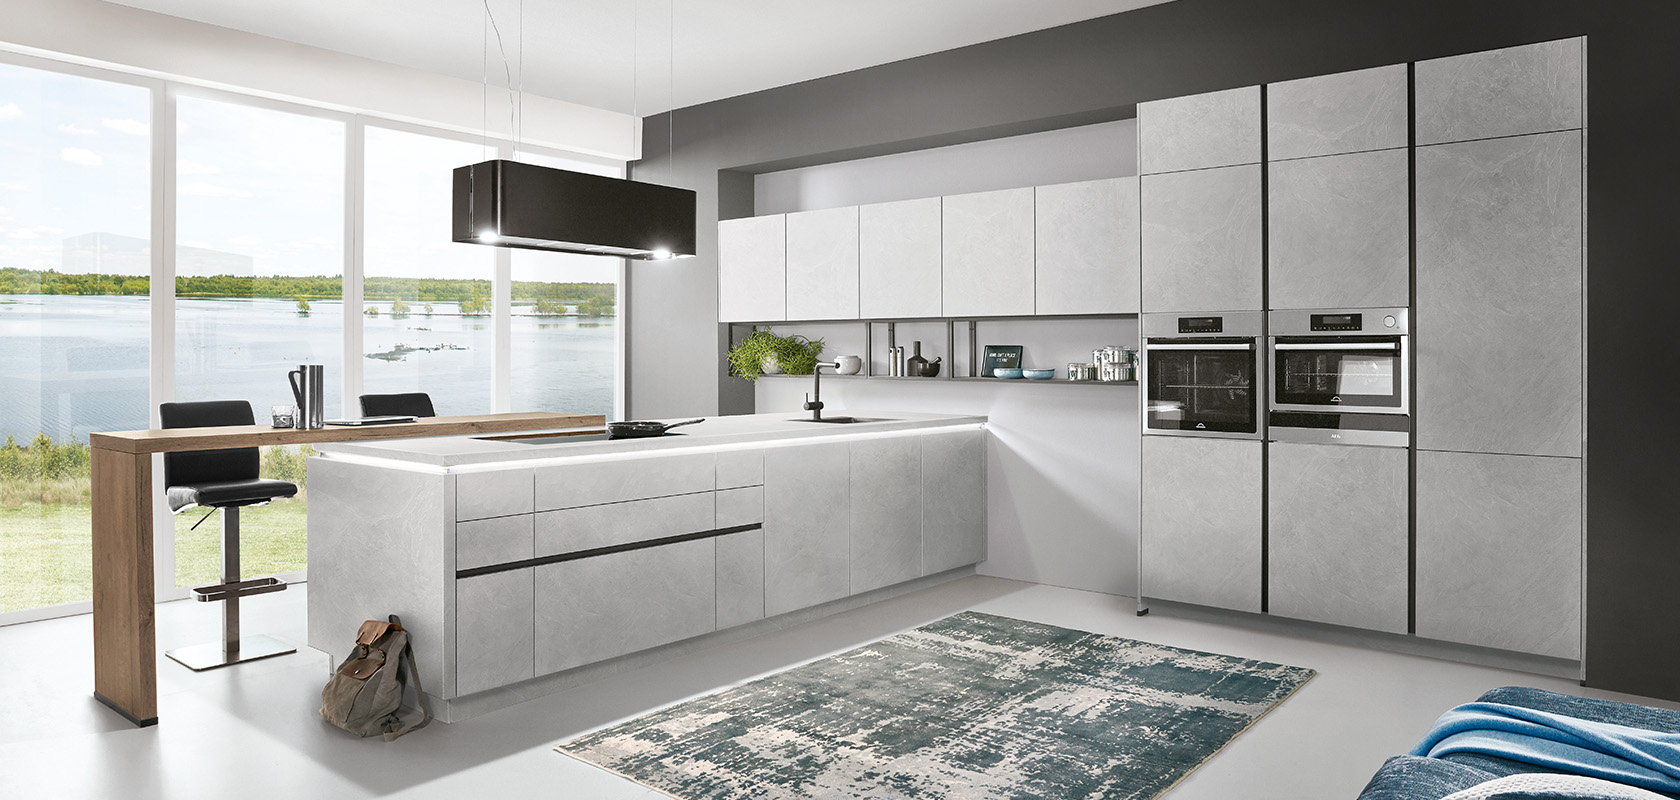 Moderne Kücheninnenräume mit eleganten grauen Schränken, eingebauten Geräten und einer geräumigen Insel mit Blick auf einen ruhigen See durch große Fenster.